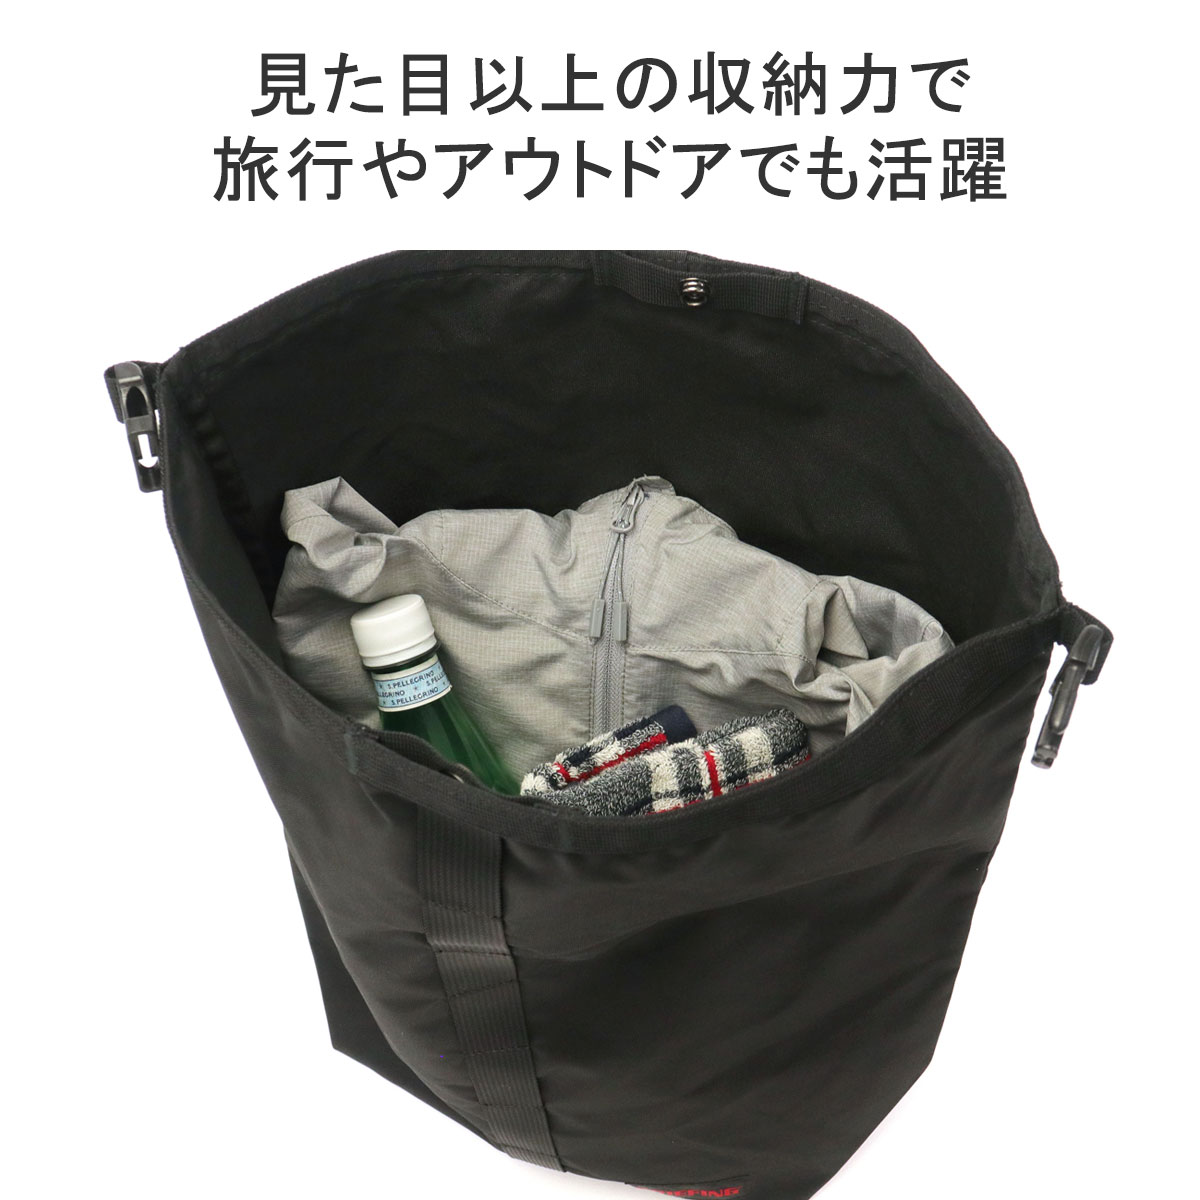 日本正規品 ブリーフィング トートバッグ メンズ レディース 